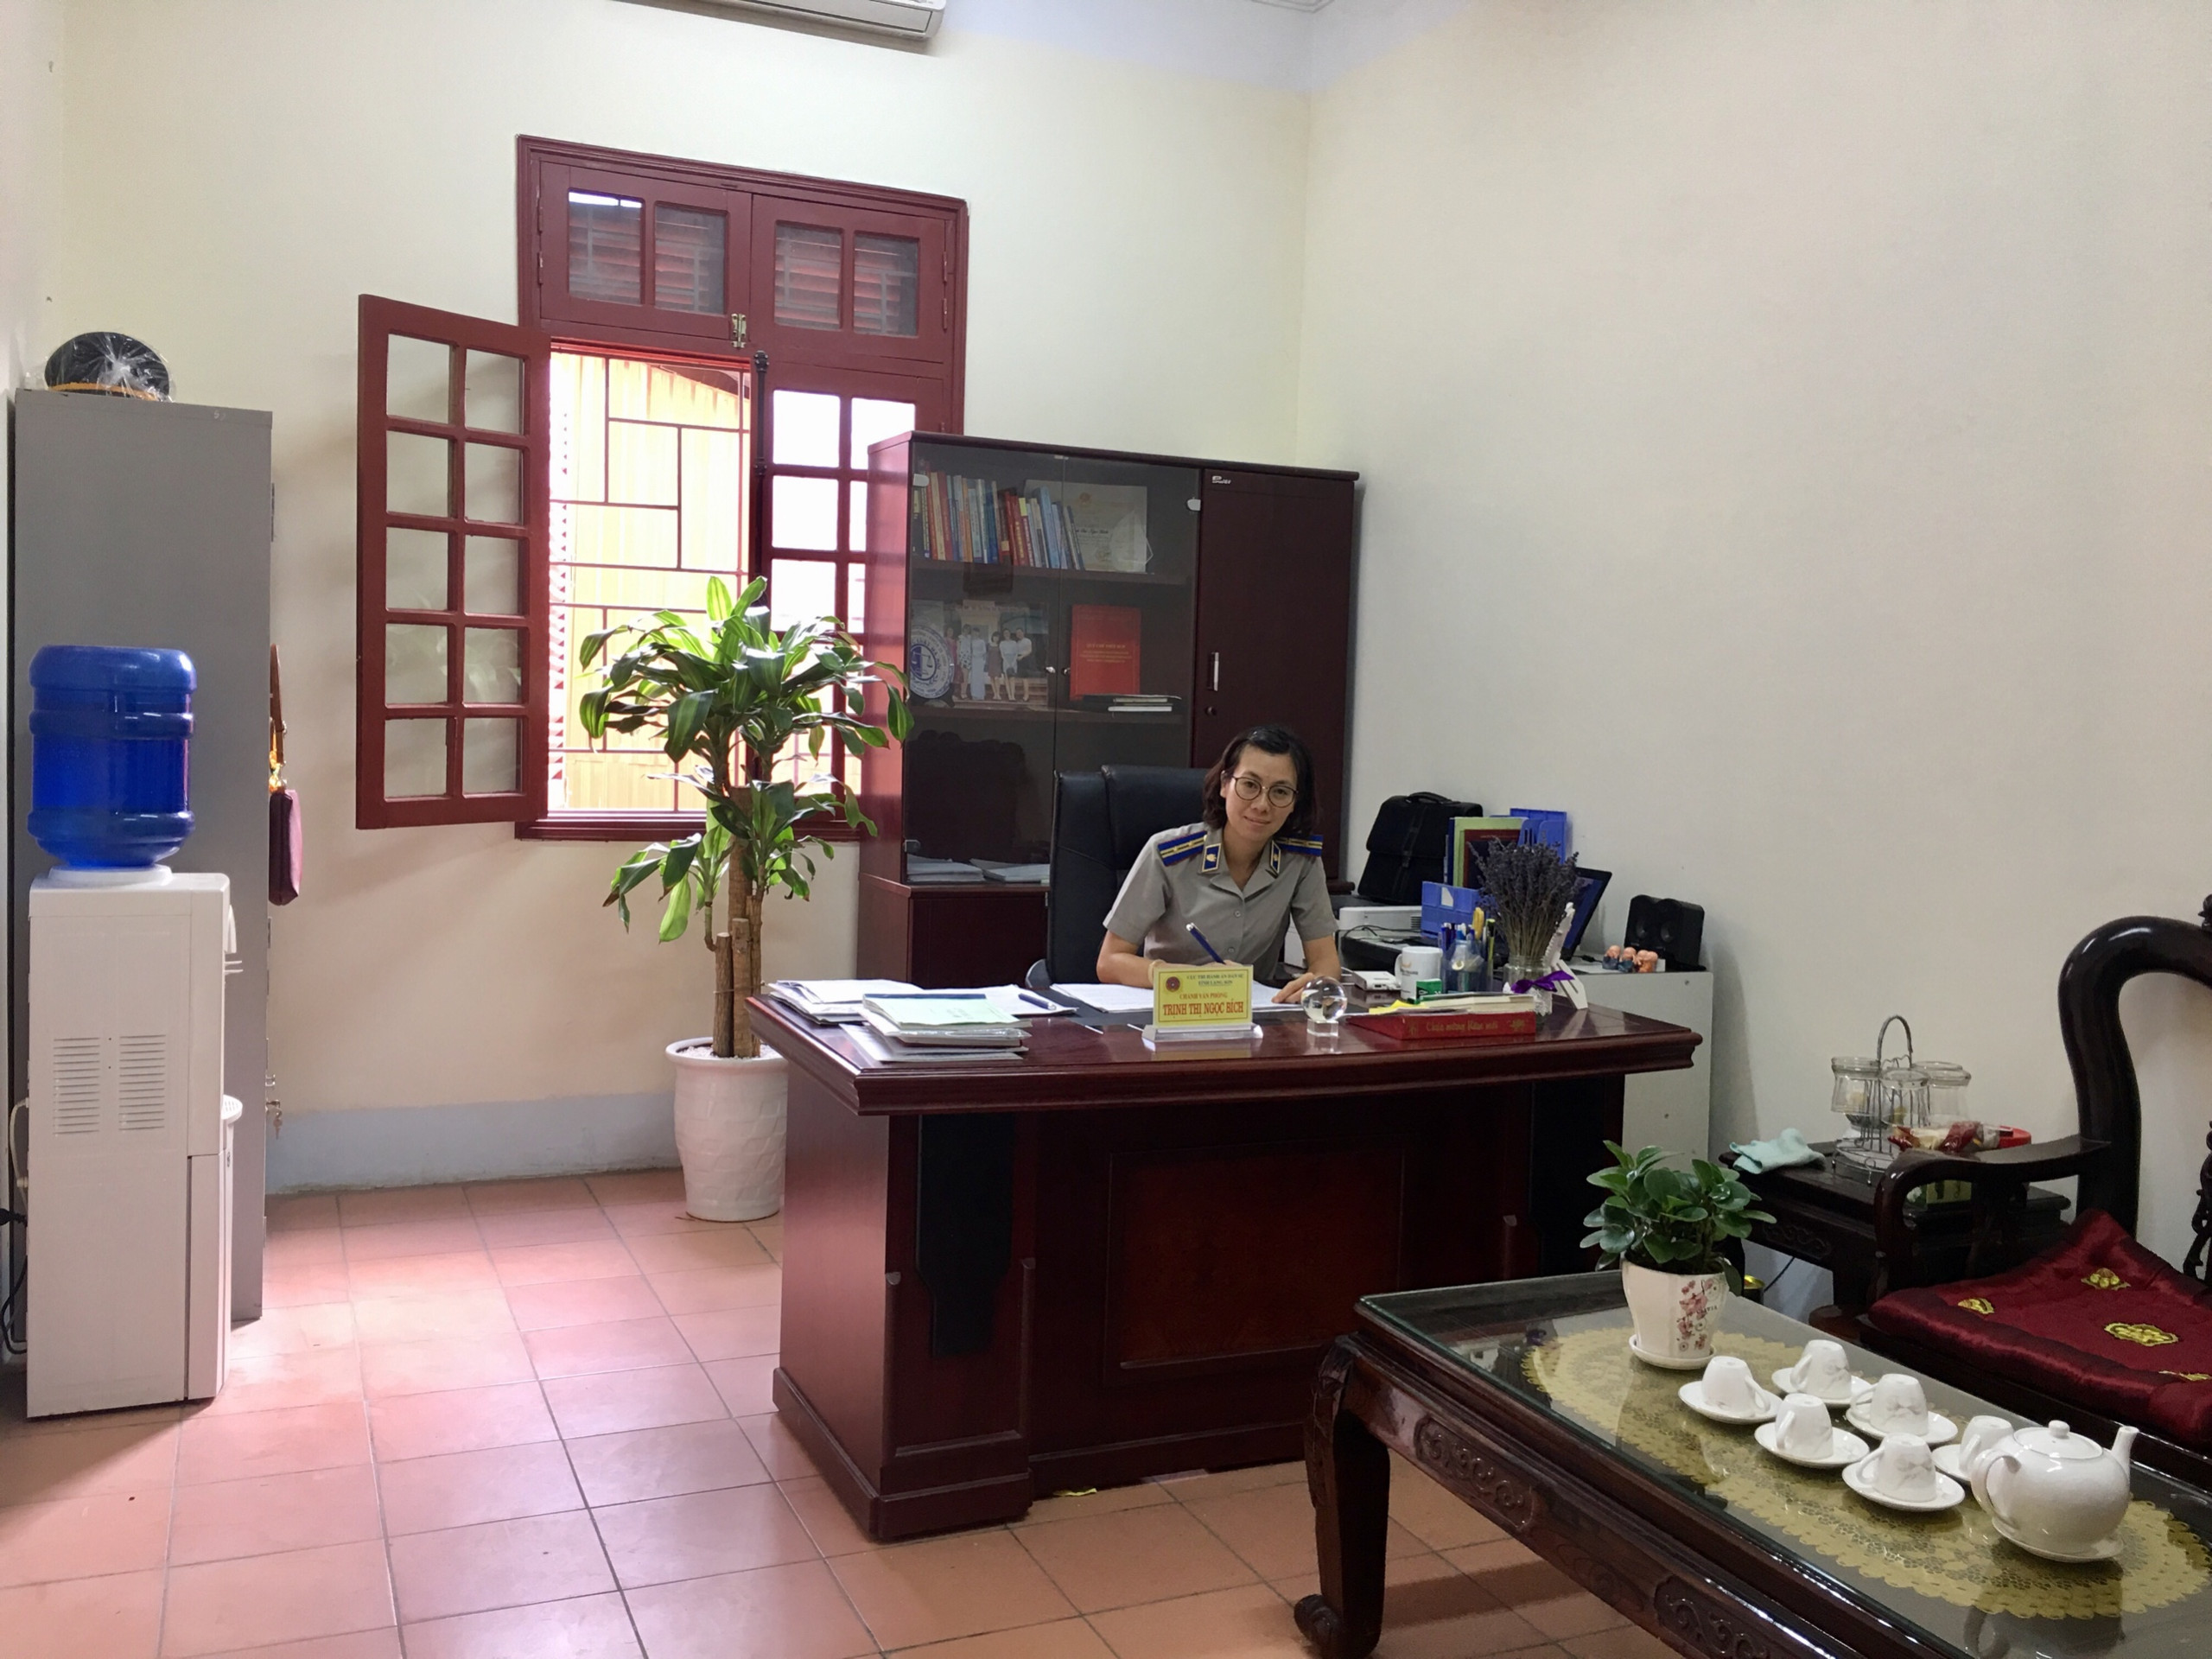 Cục THADS Lạng Sơn “Xây dựng cơ quan Thi hành án dân sự văn hóa, xanh – sạch – đẹp – an toàn năm 2018”